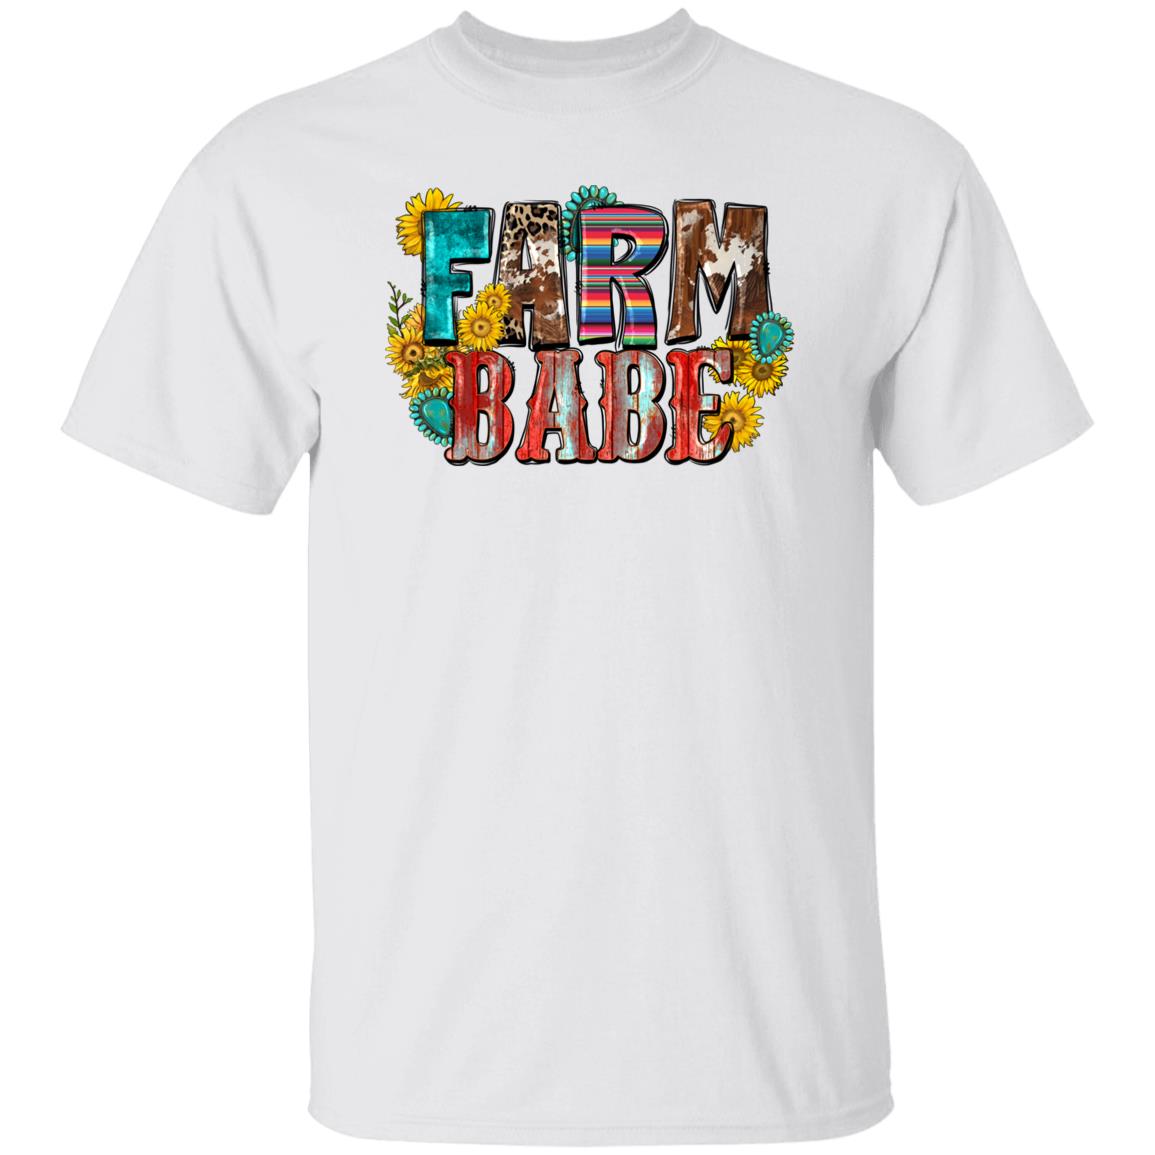 Farm babe T-Shirt gift Western sunflower farmer girl Unisex tee Sand White Sport Grey-Family-Gift-Planet